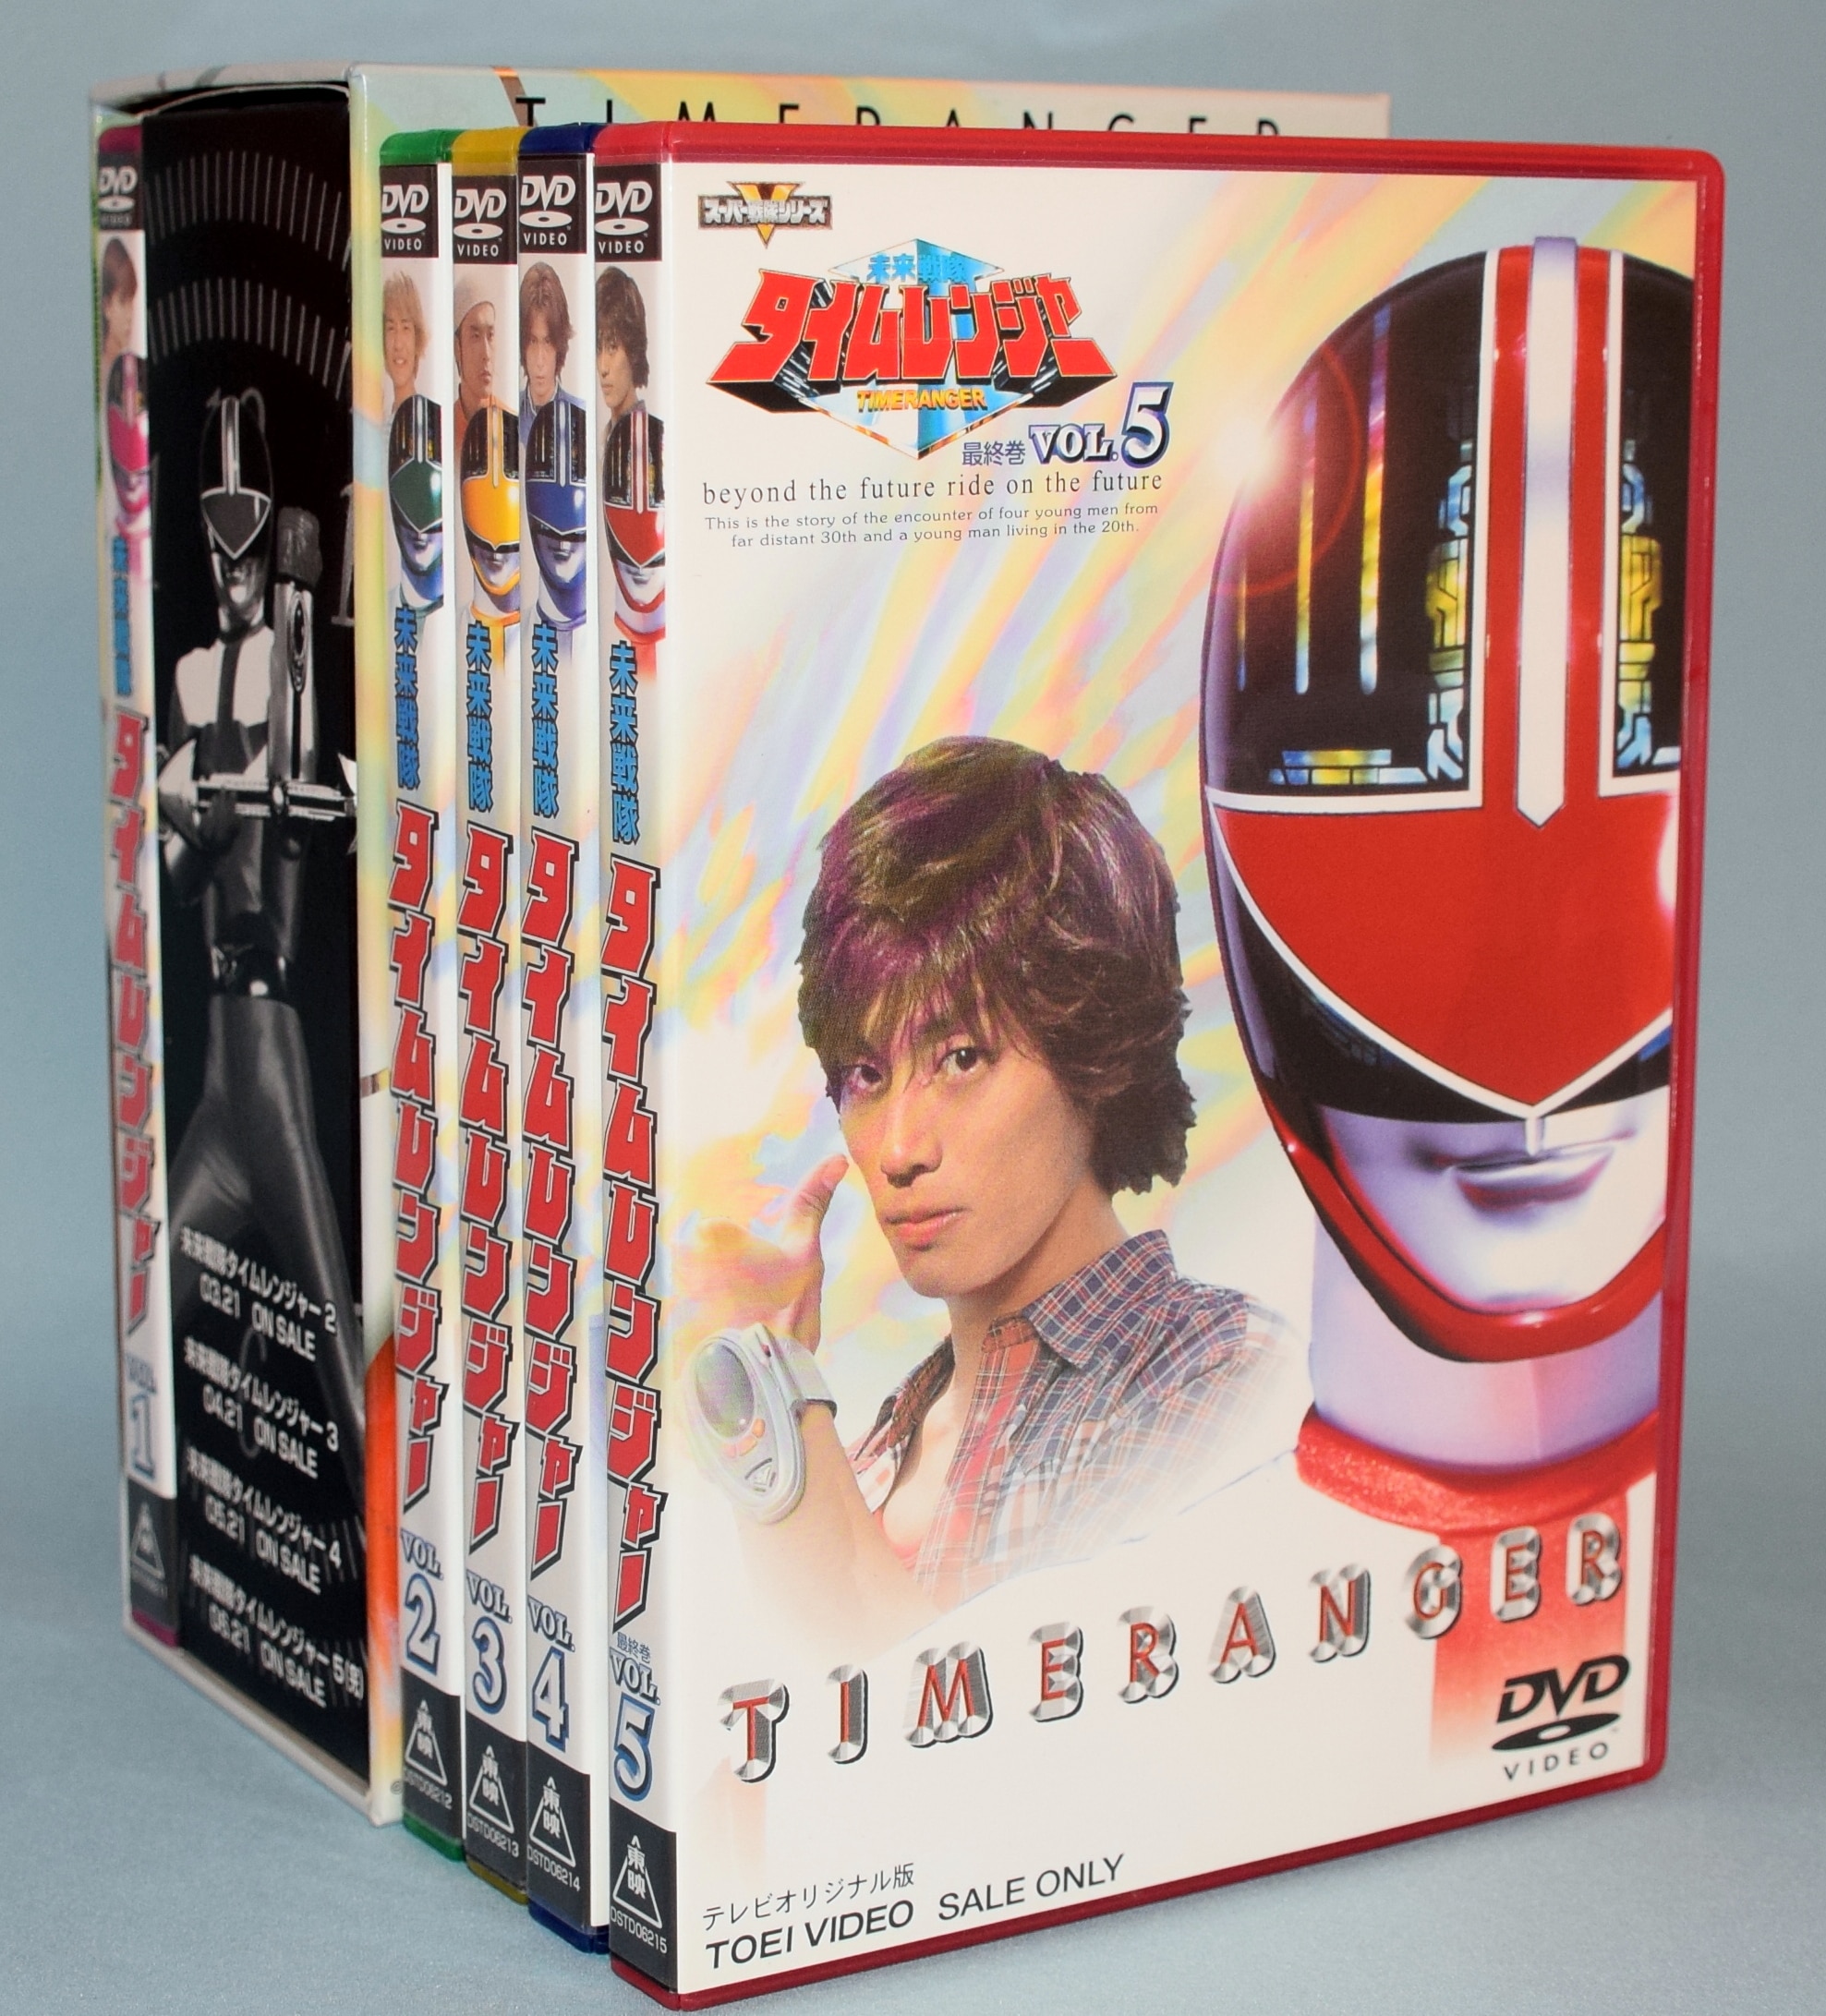 特撮DVD スーパー戦隊 未来戦隊タイムレンジャーBOX付全5巻セット